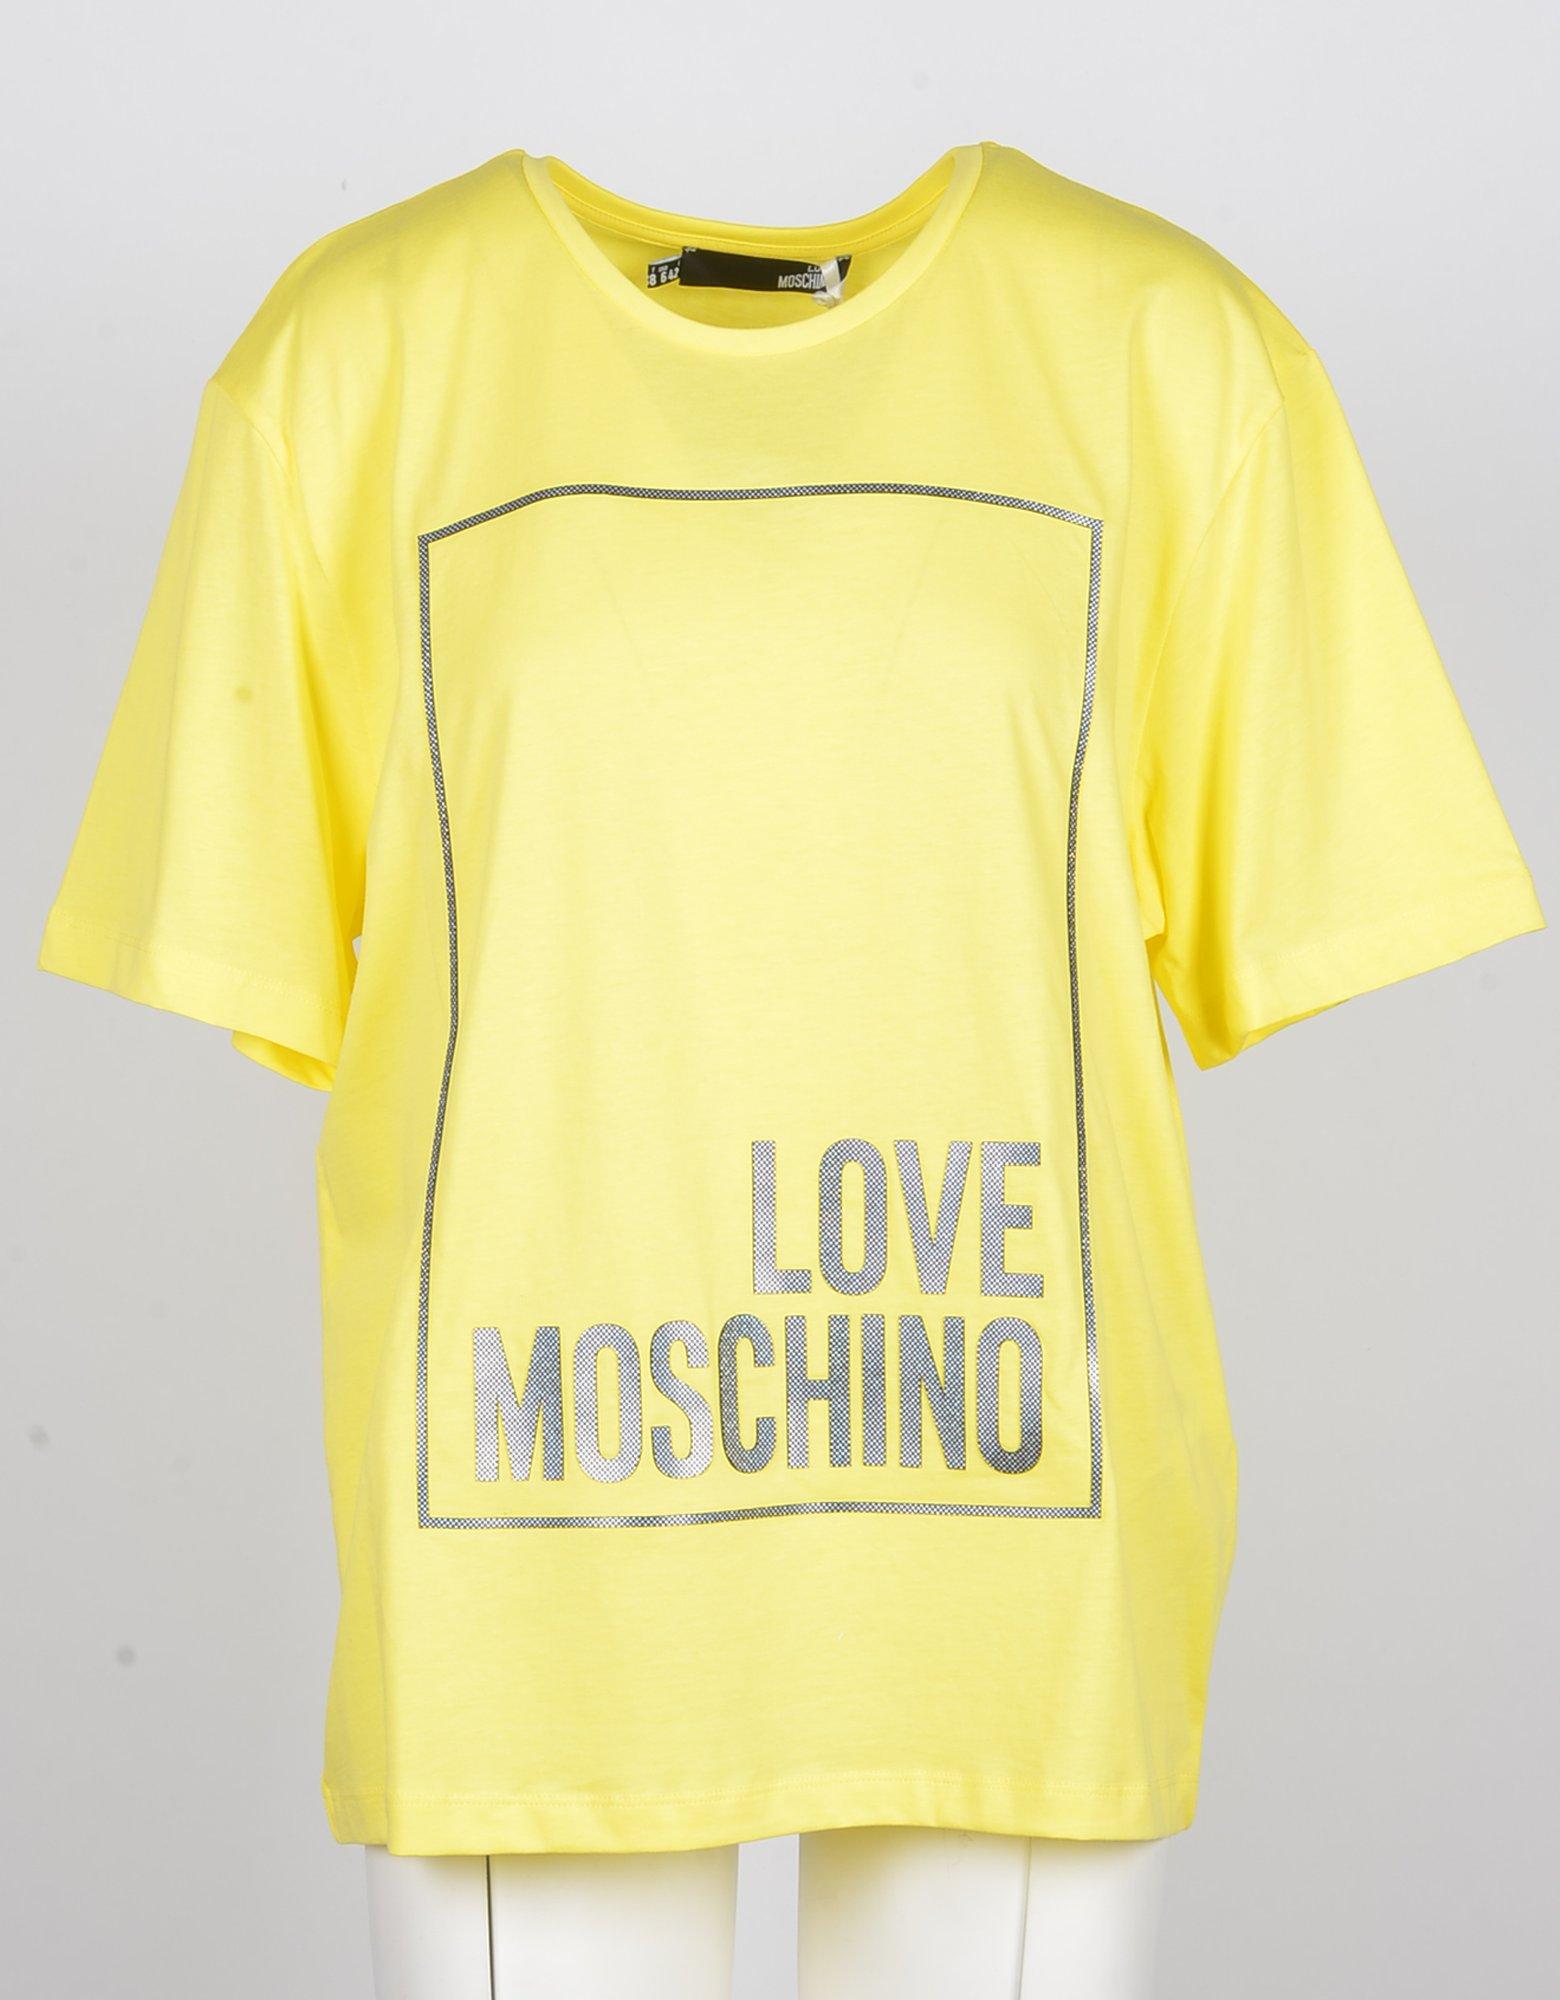 moschino yellow t shirt